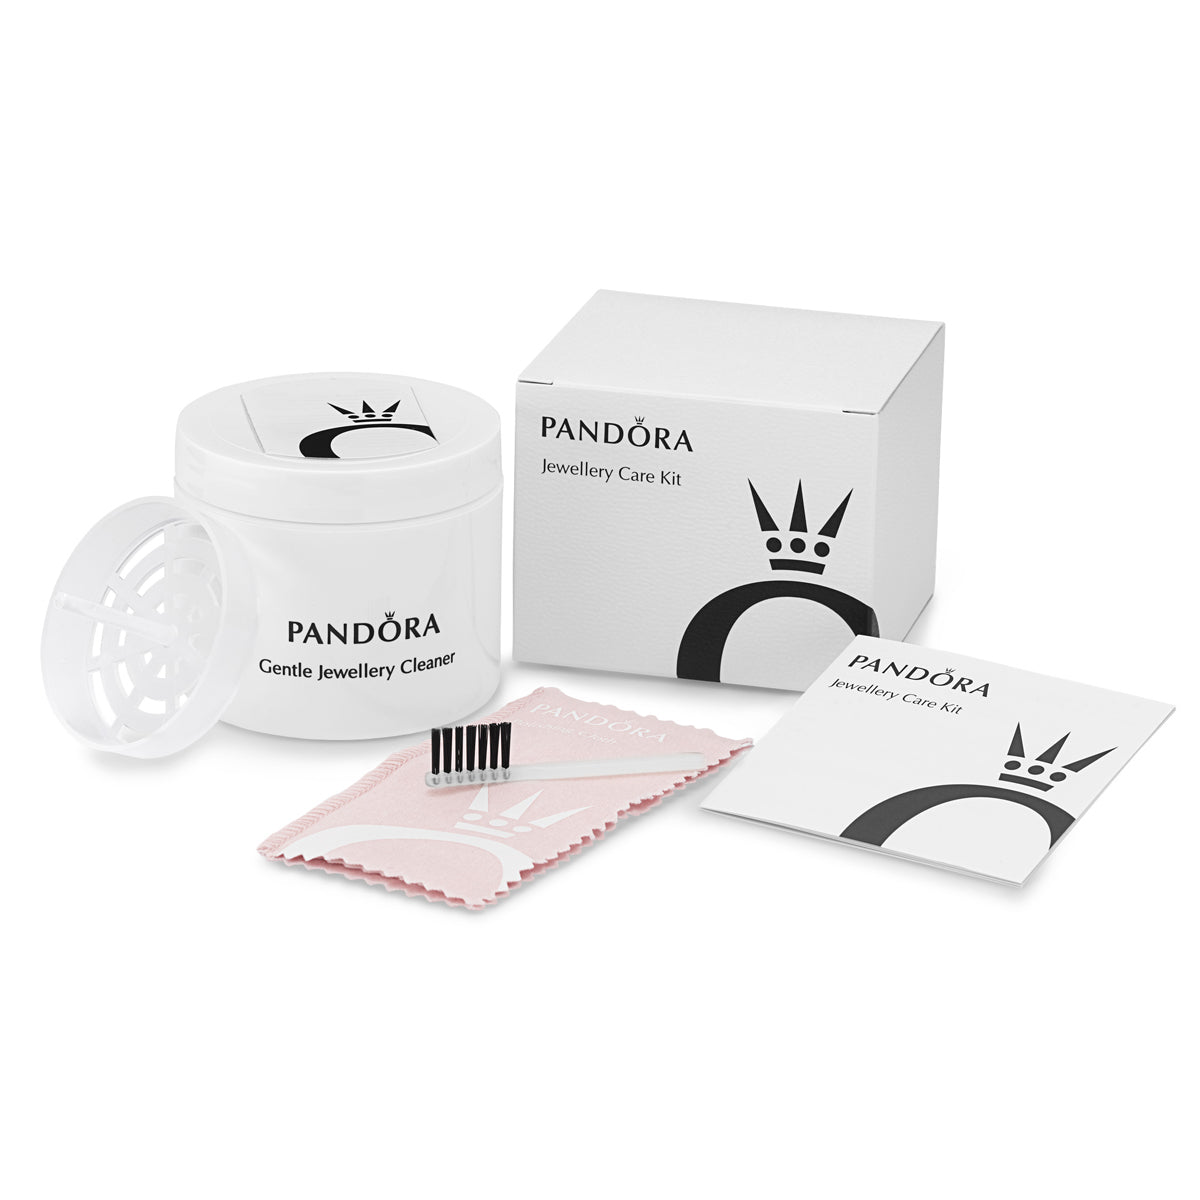 Pandora Care Kit